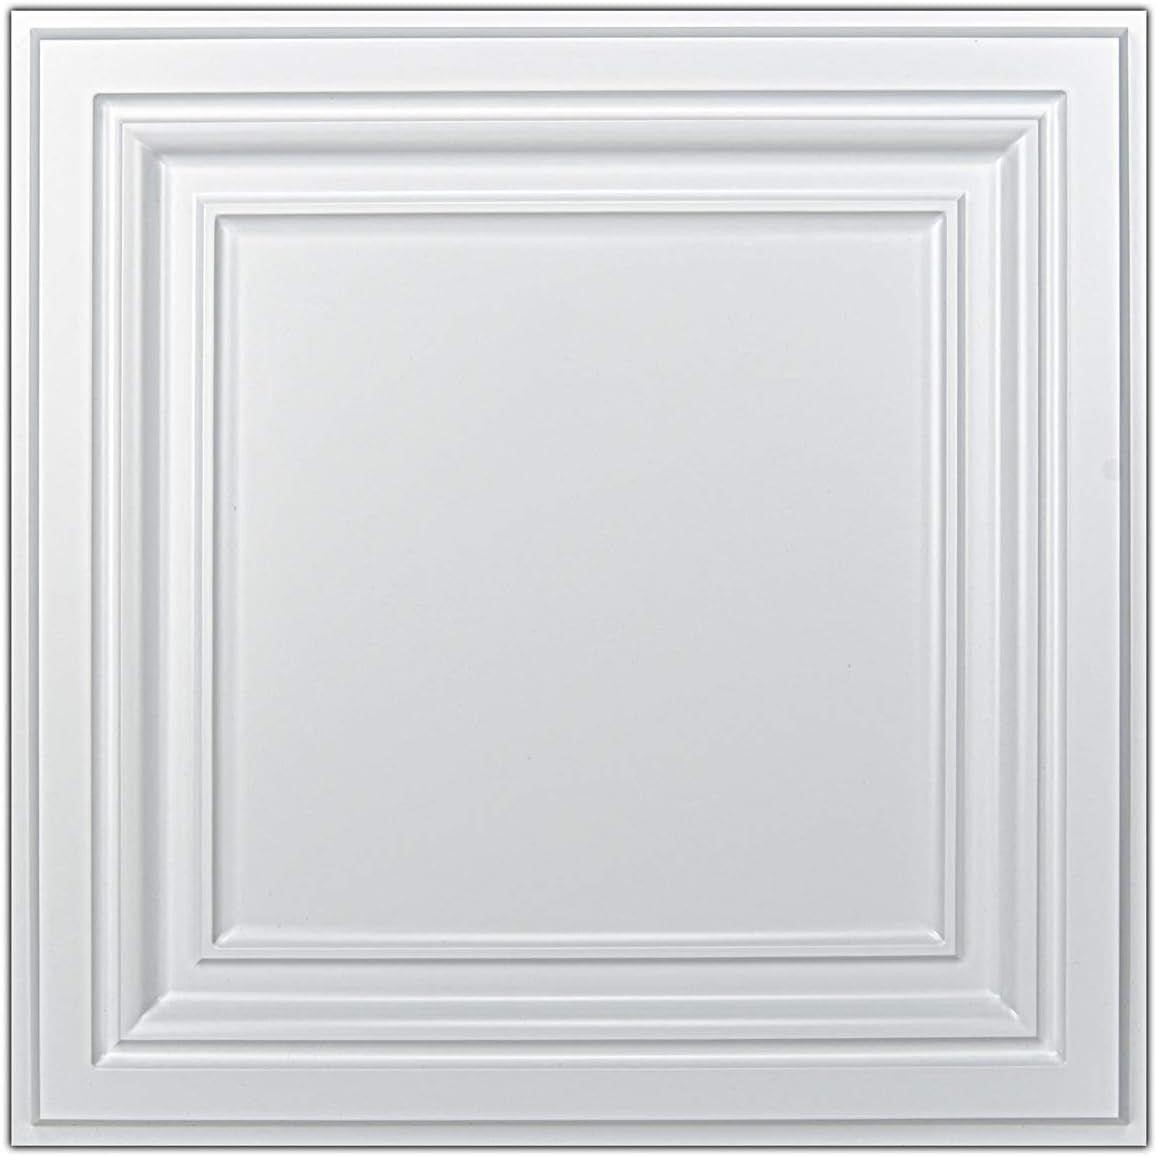 NEW $126 Art3d PVC Ceiling Tiles, 12 Pack